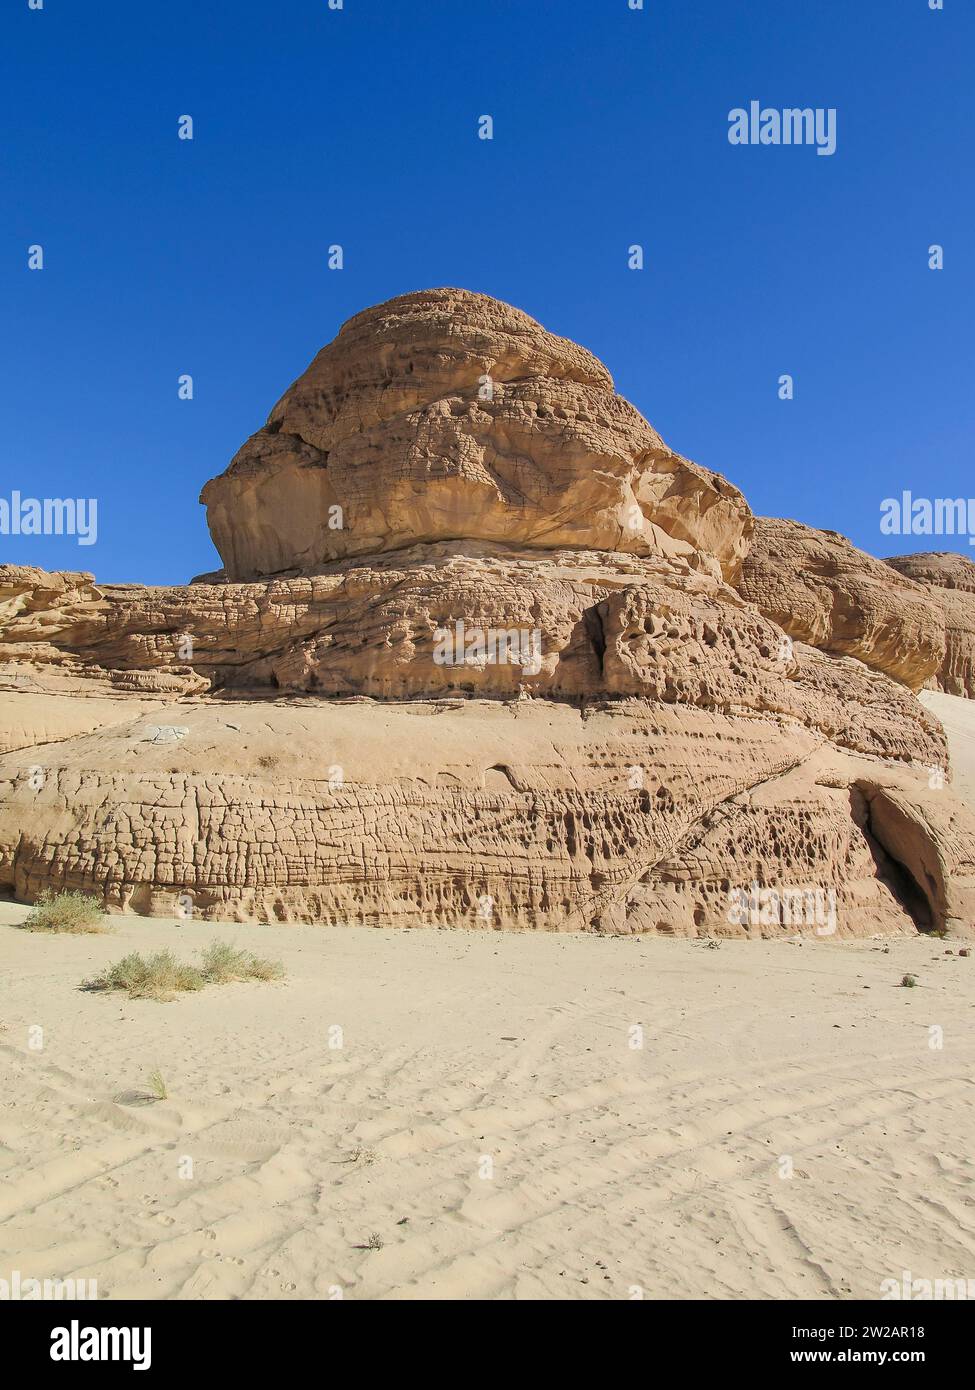 Erodierte Felsen, Berglandschaft im südlichen Sinai zwischen Ain Khudra und Nuwaiba, Ägypten Stockfoto